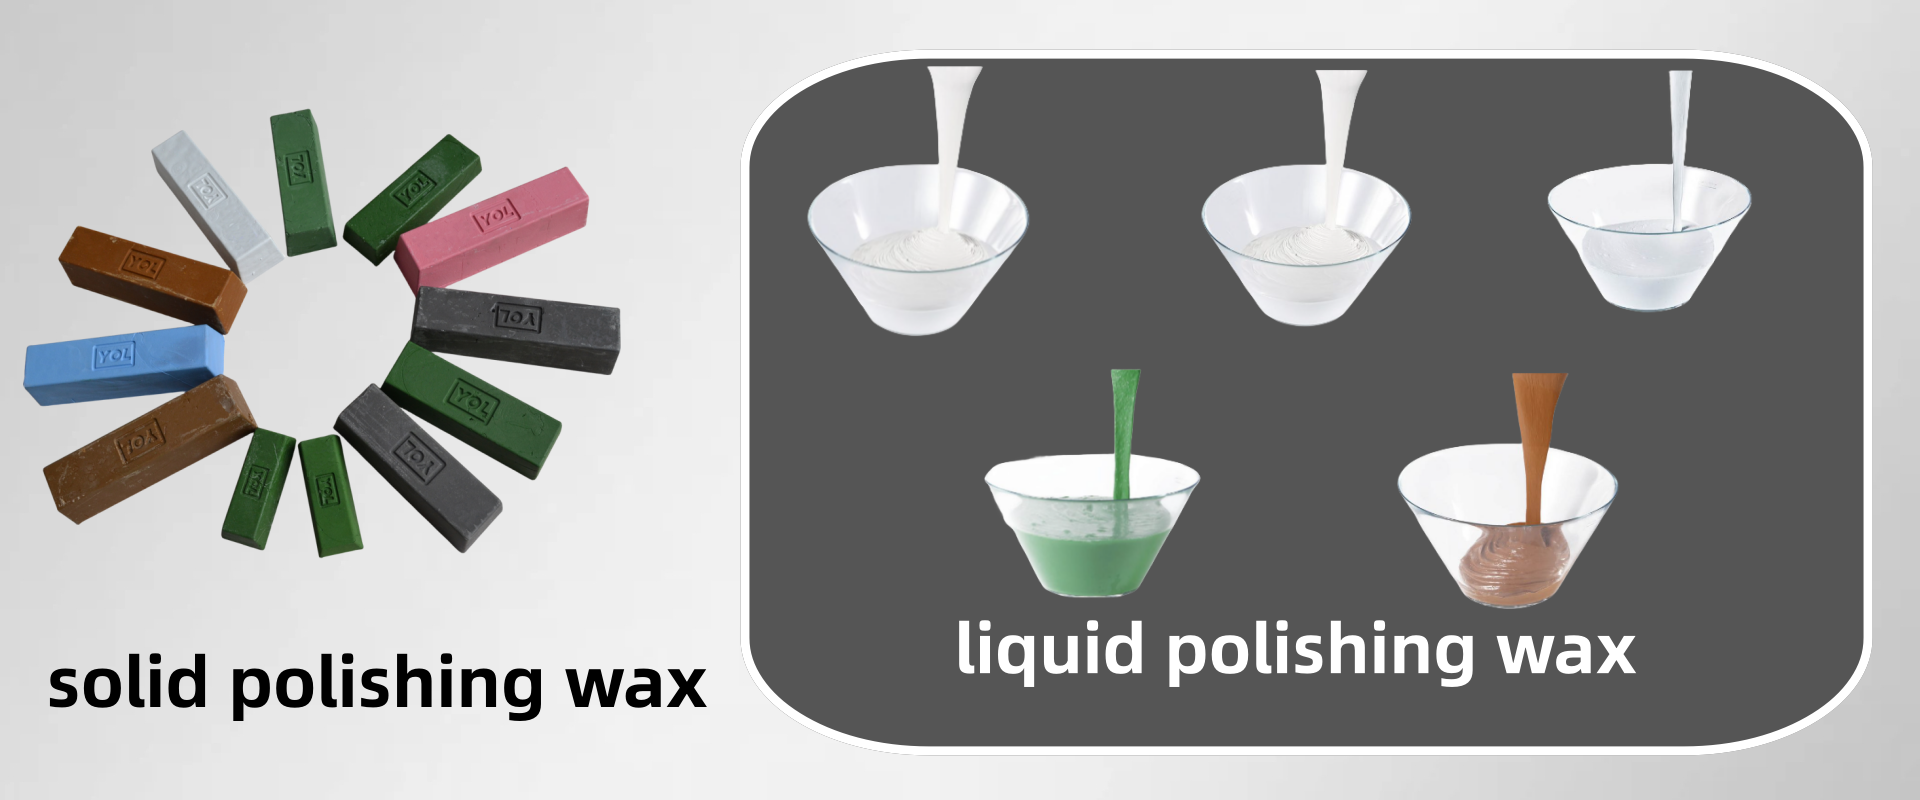 Solid and liquid polishing waxes